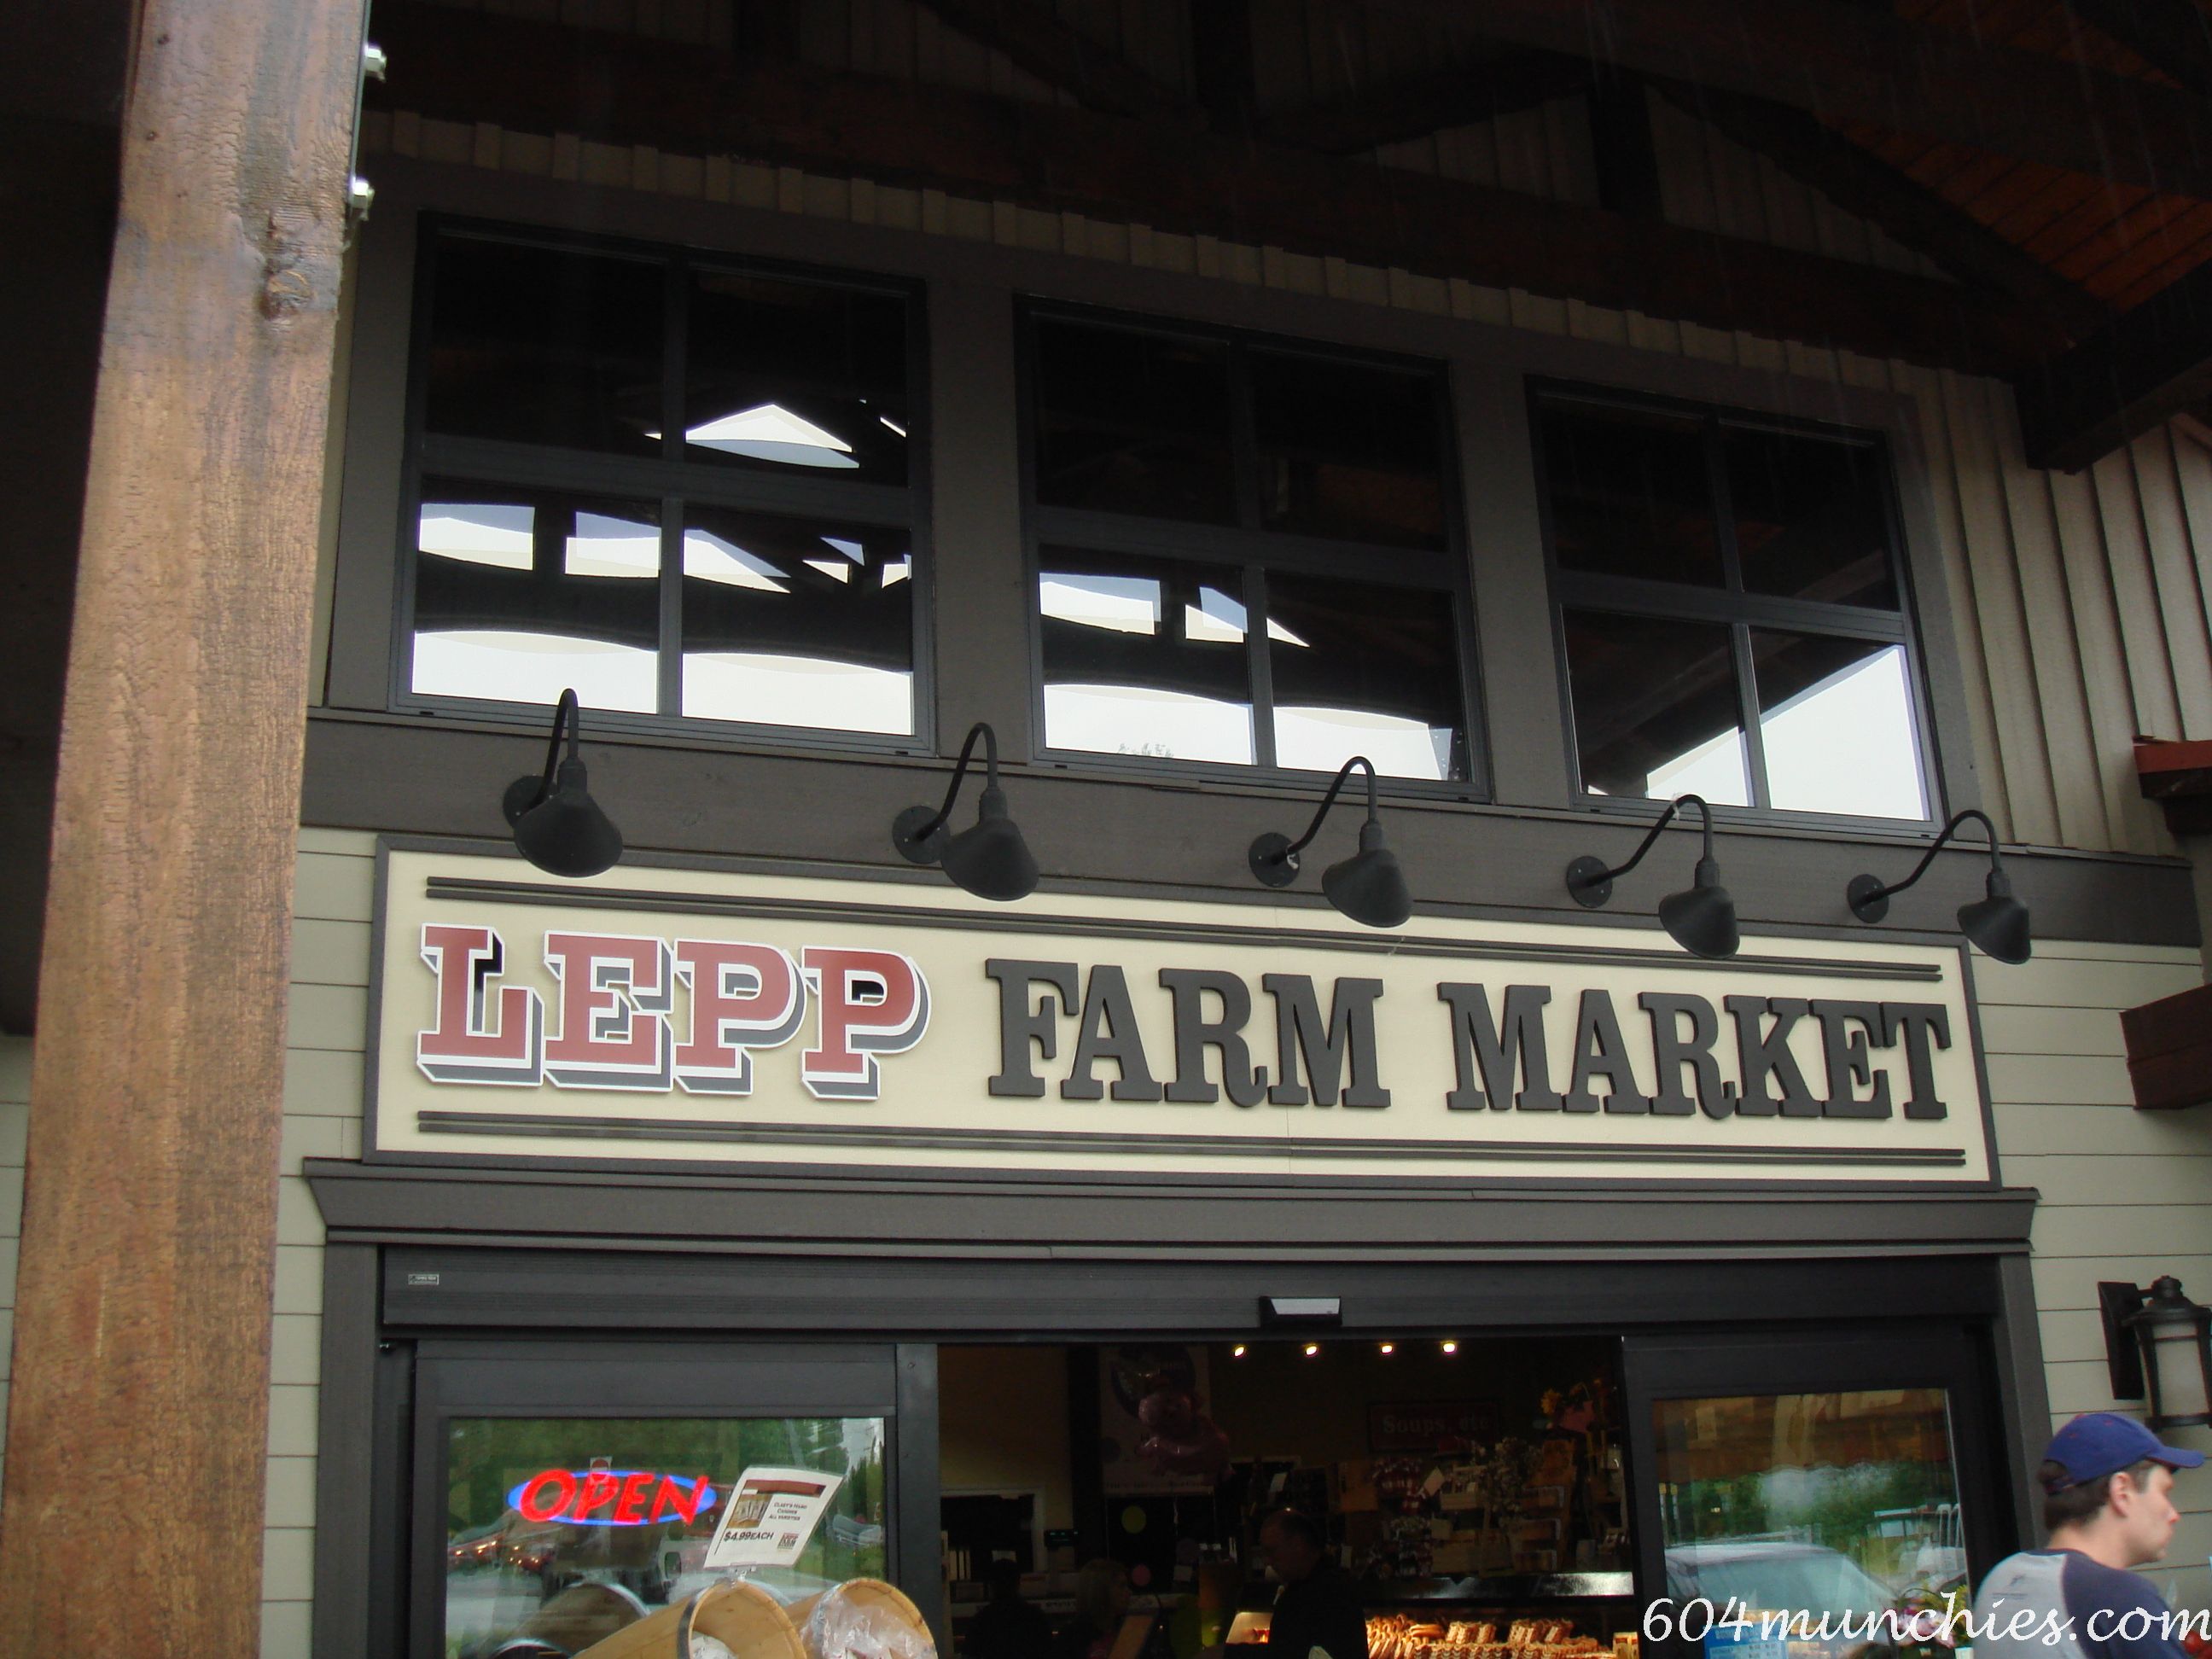 Fraser Valley Farm Loop - Lepp Farm Market